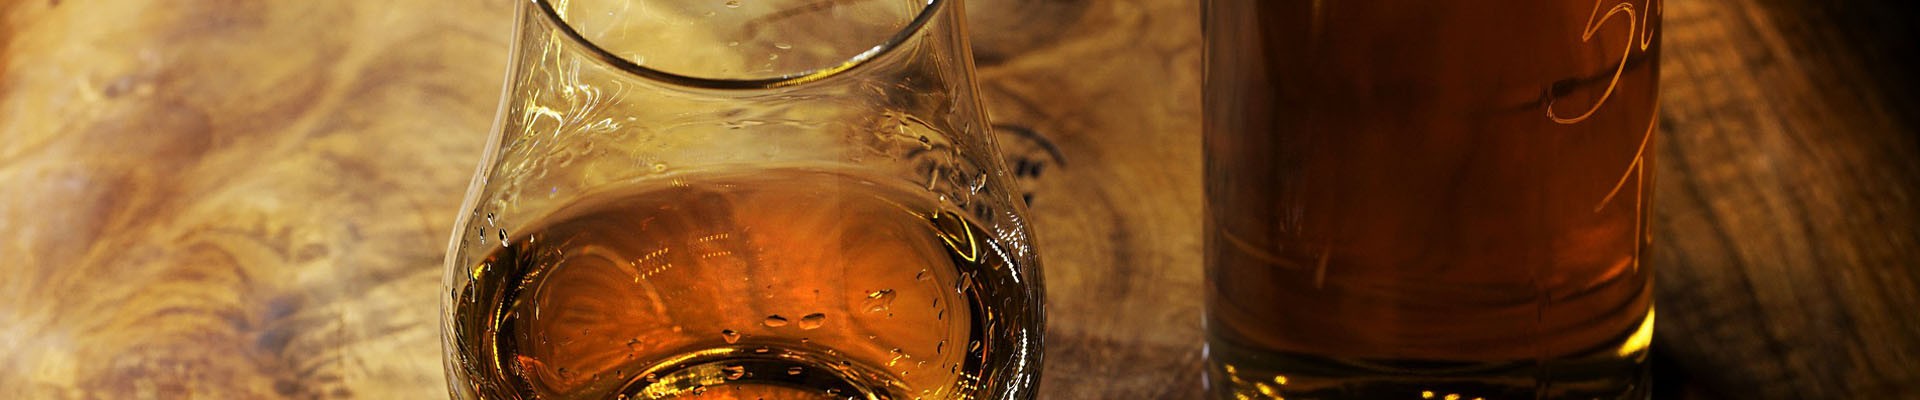 Kända whisky destillerier att besöka